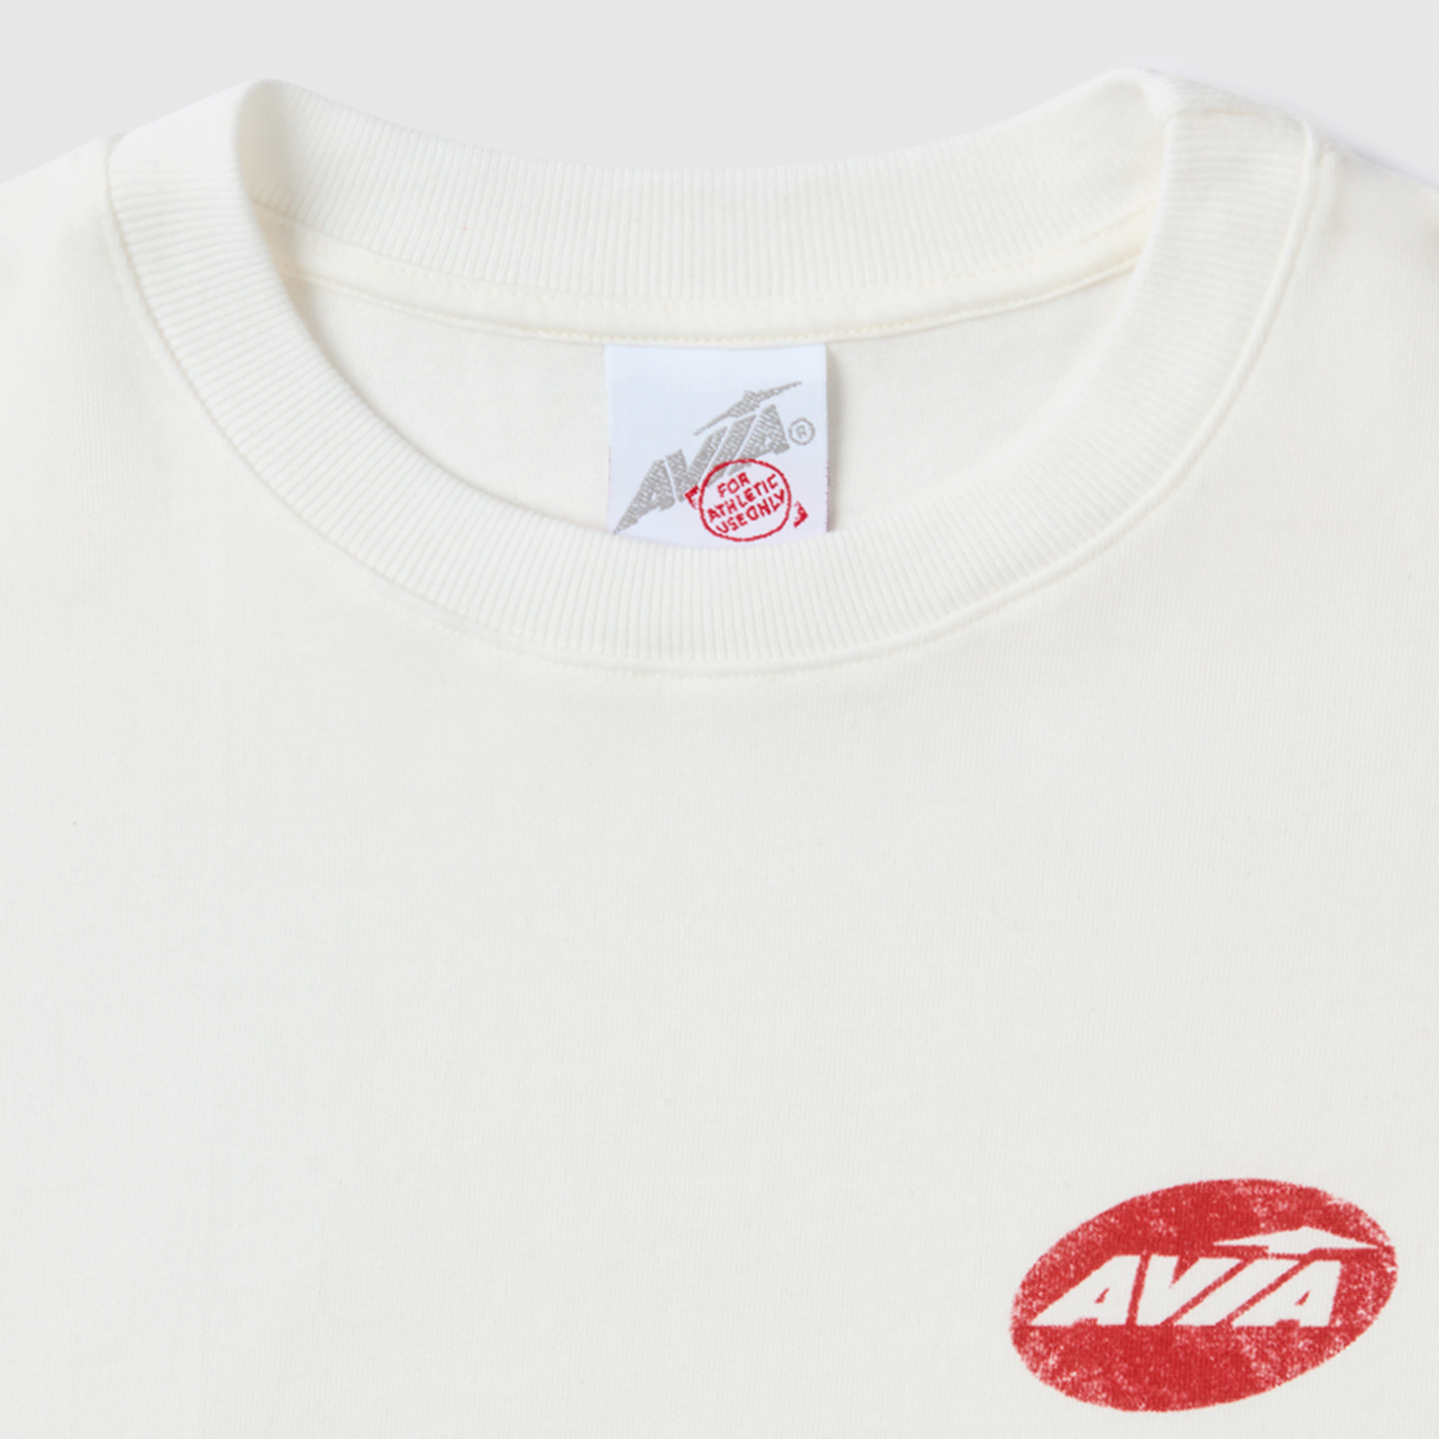 Avia Round Logo T-Shirt - Red